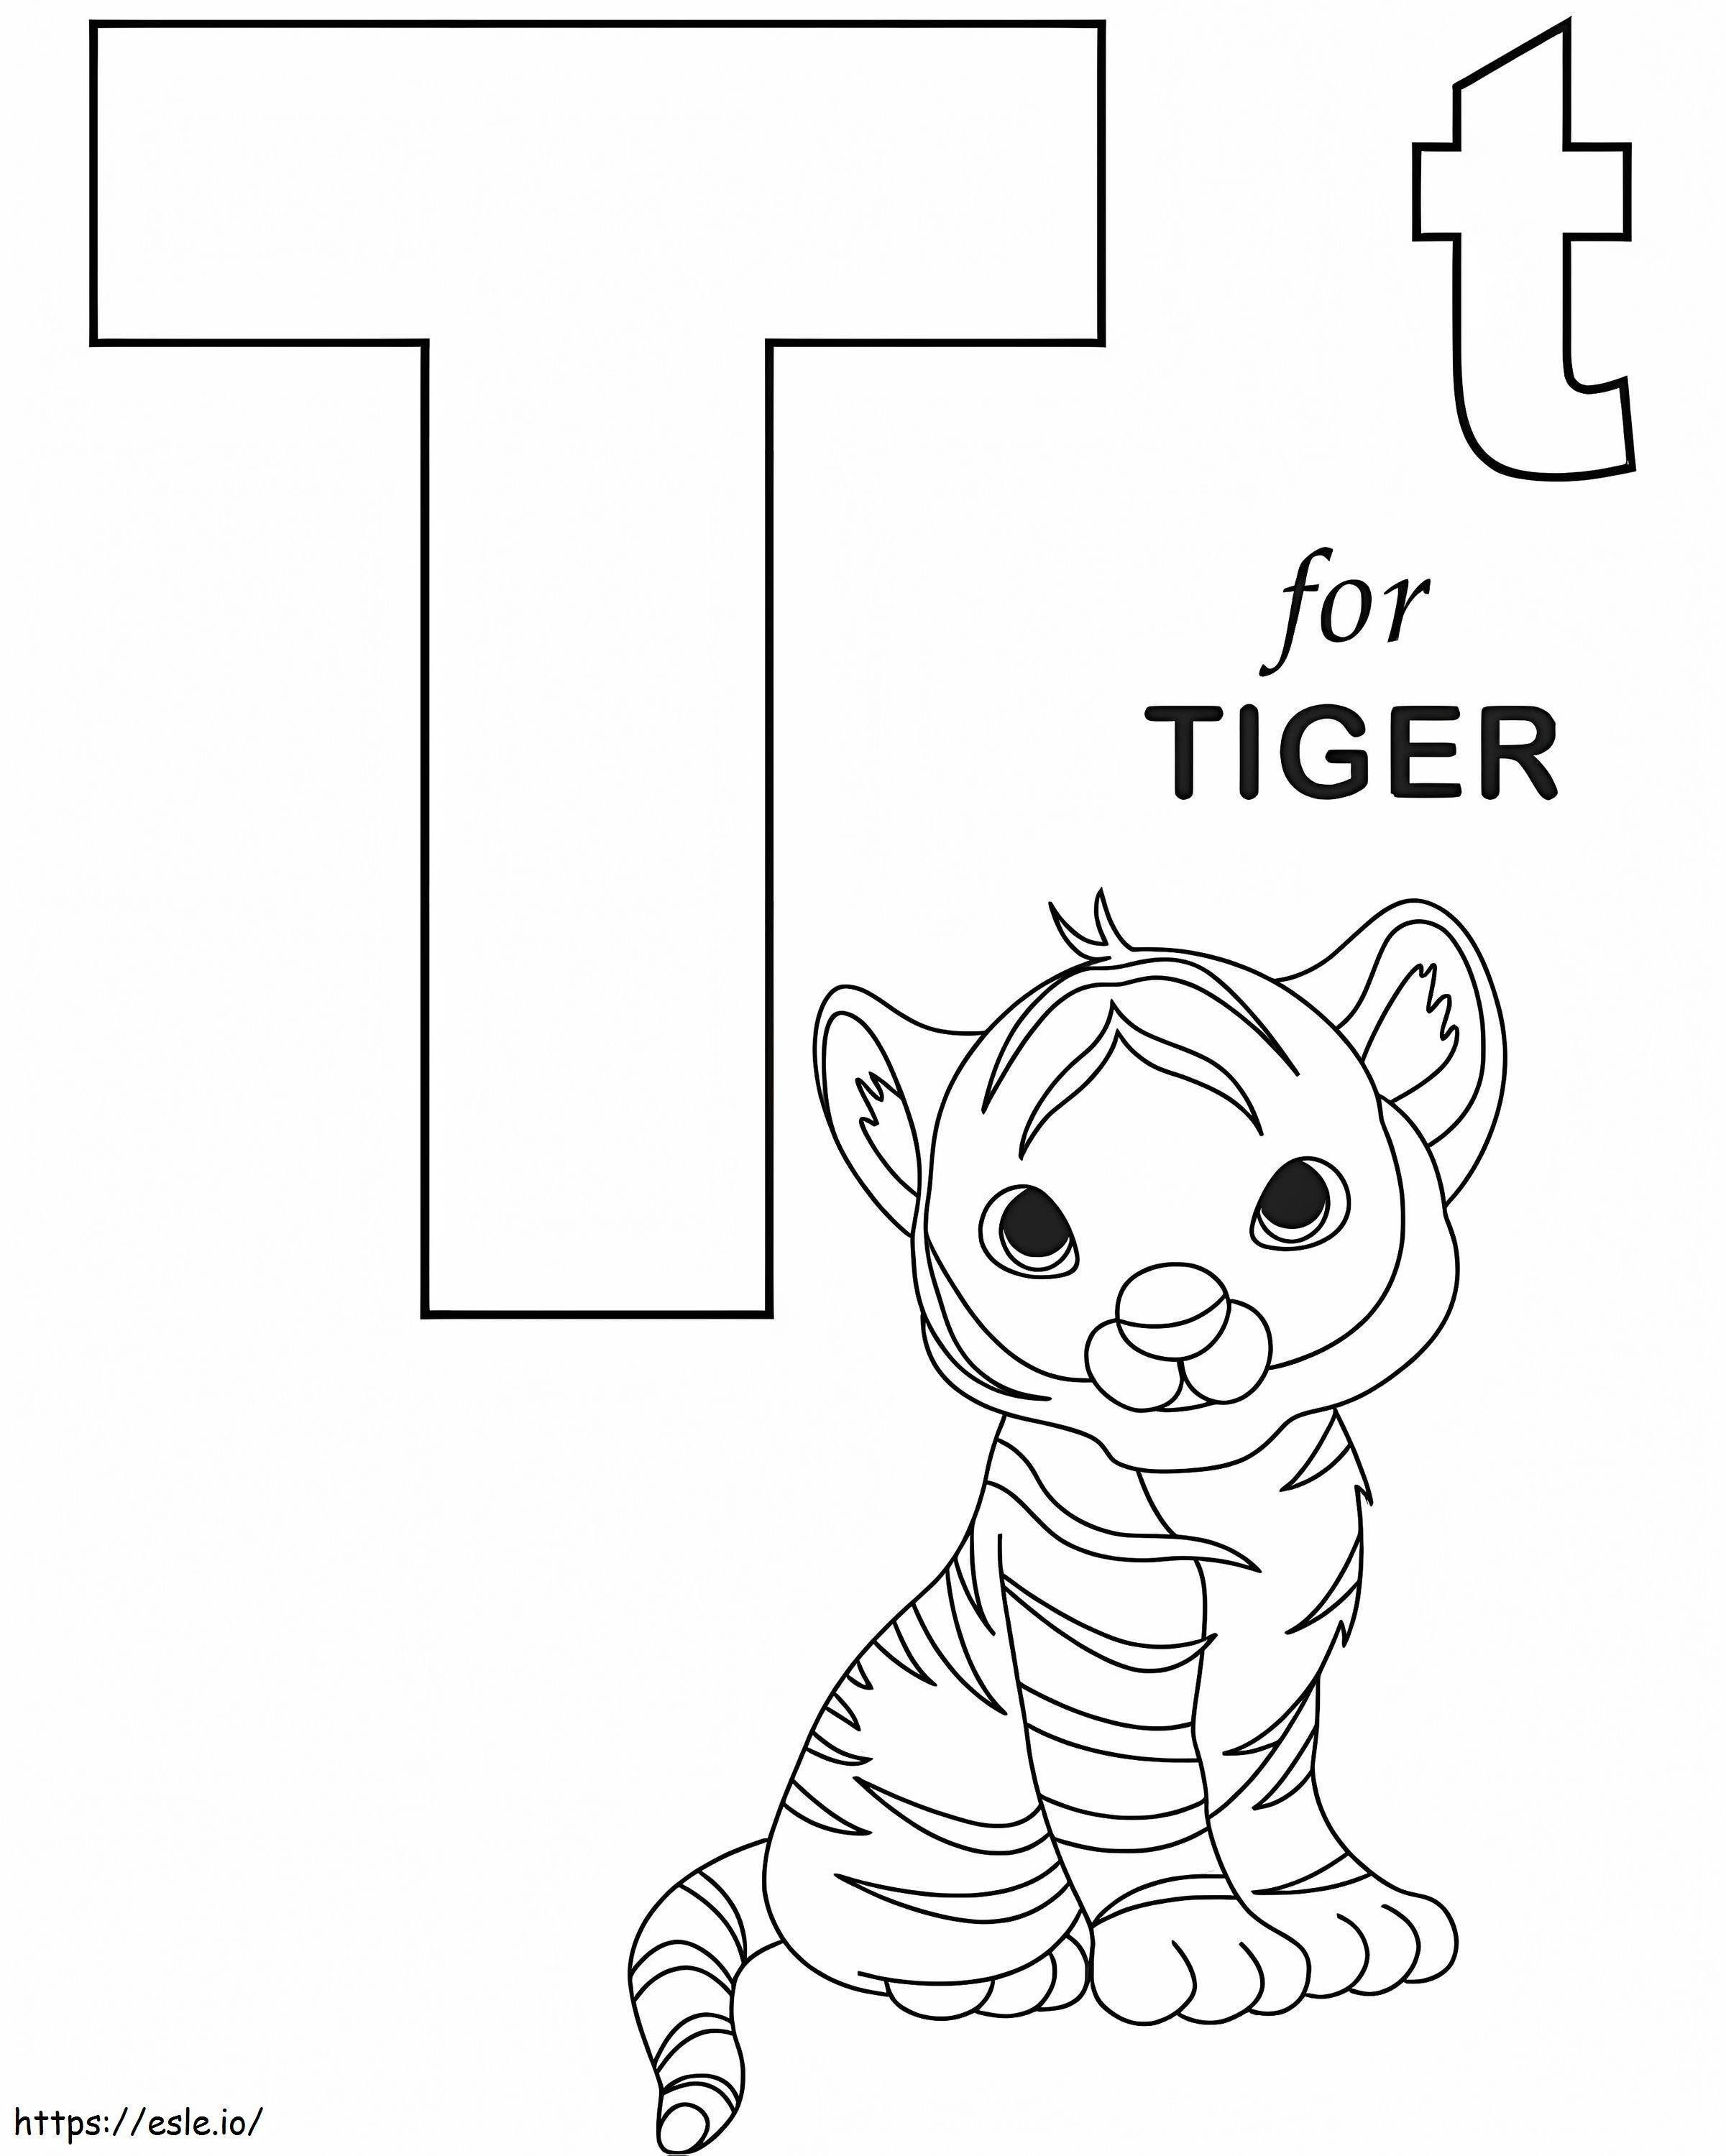 Letra T del tigre bebé para colorear